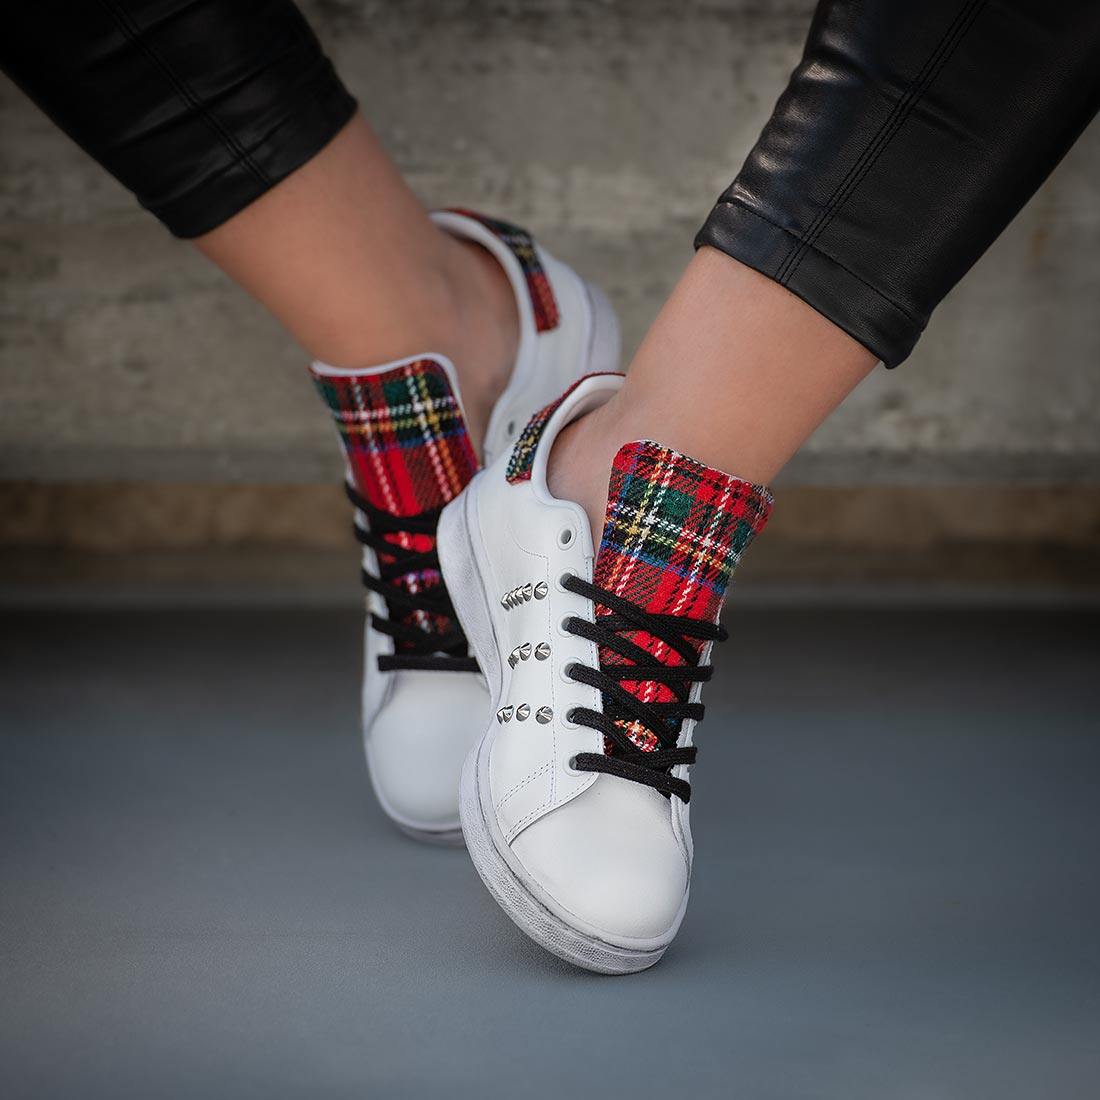 scarpe adidas borchiate con dettagli in stile tartan scozzese